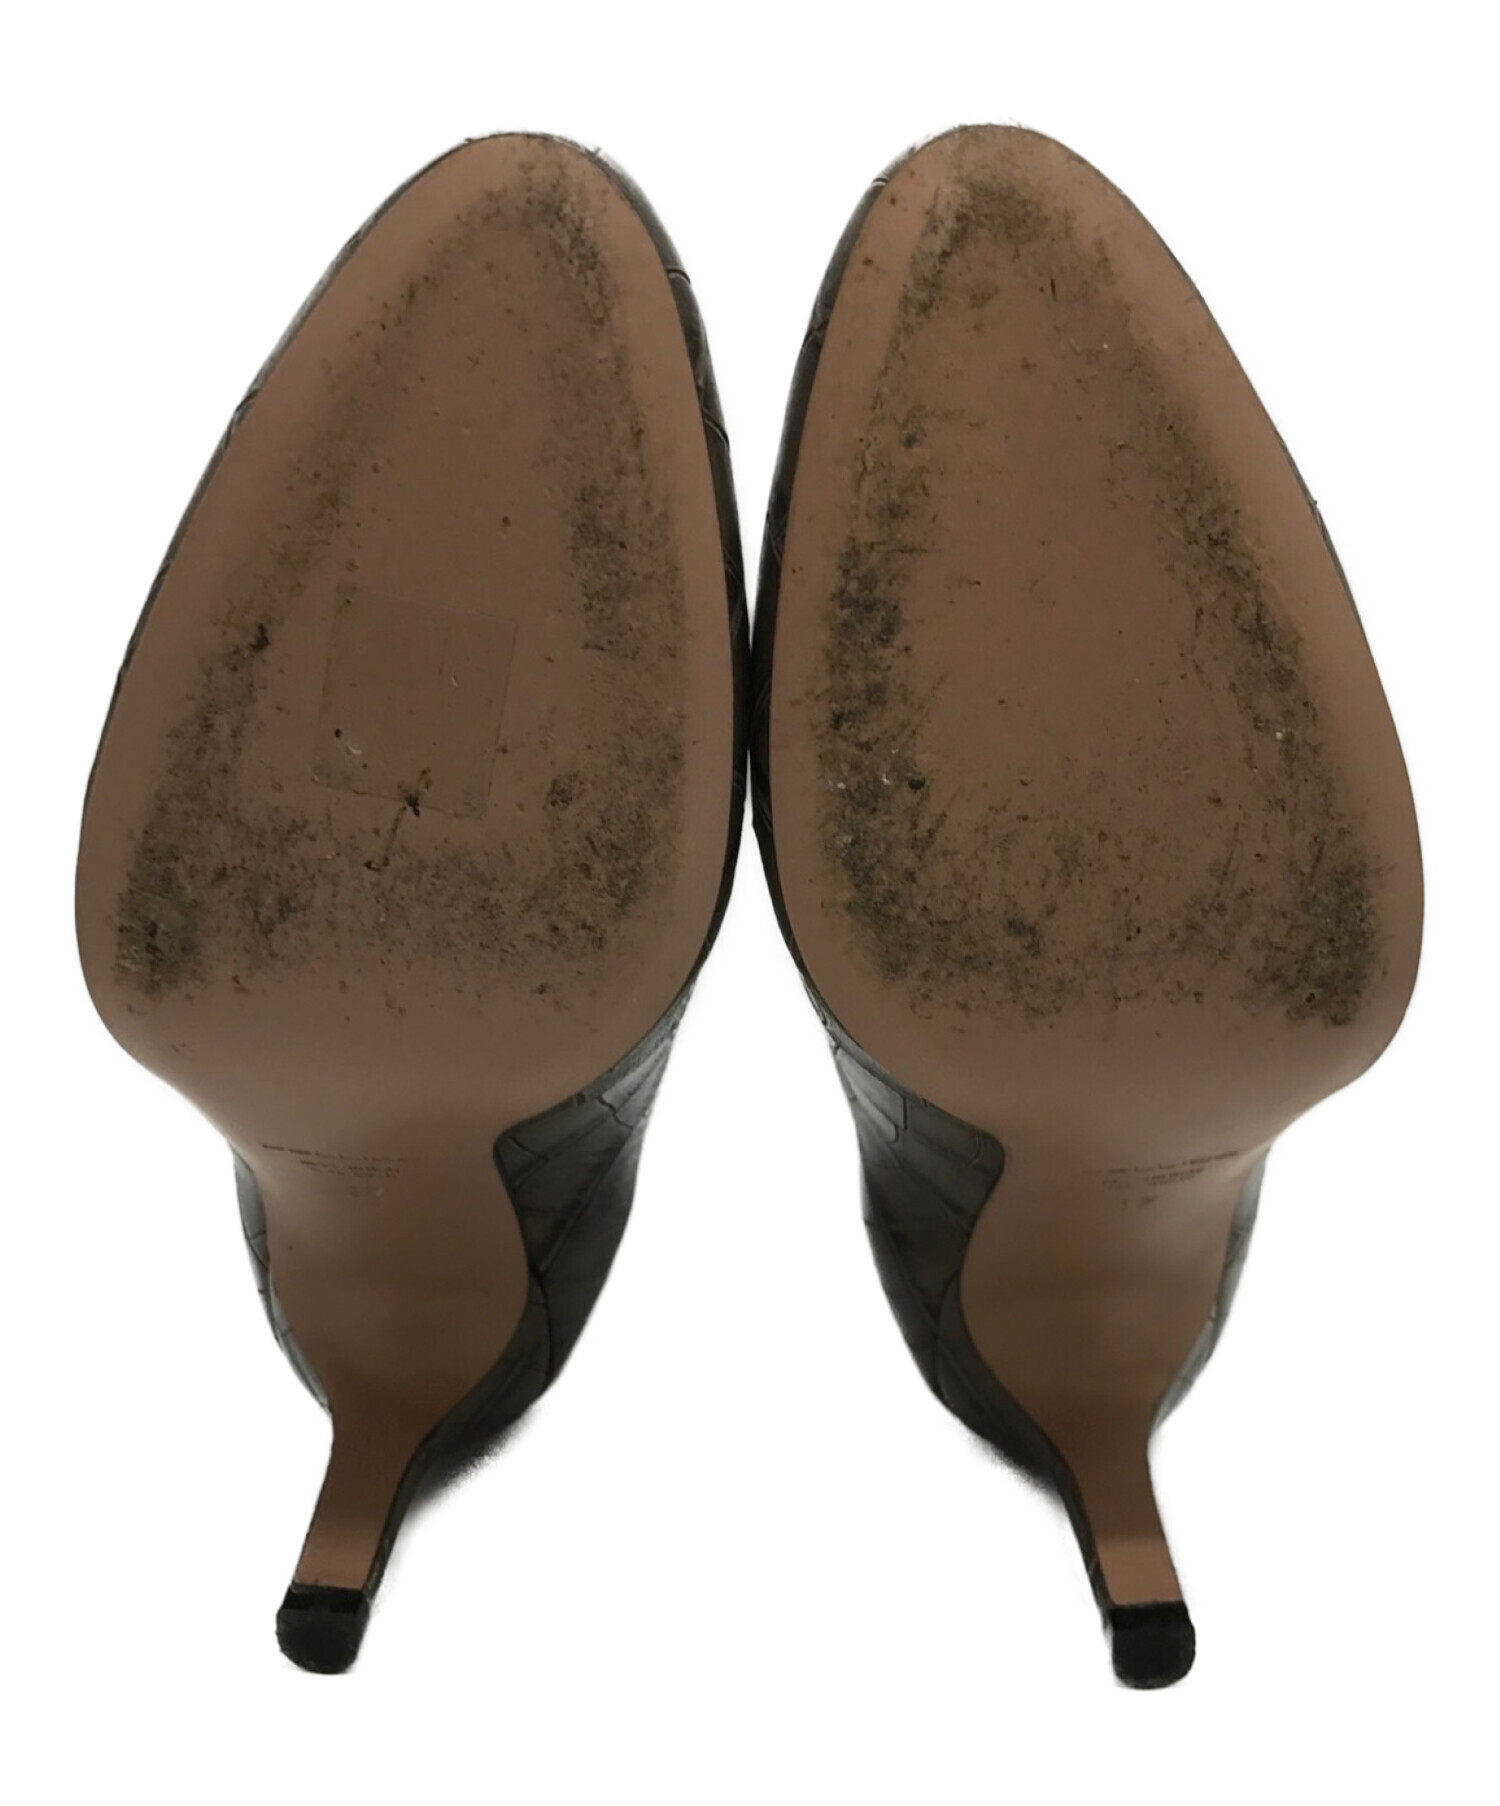 PELLICO ペリーコブラウン スエードショートブーツバックジップ - 靴